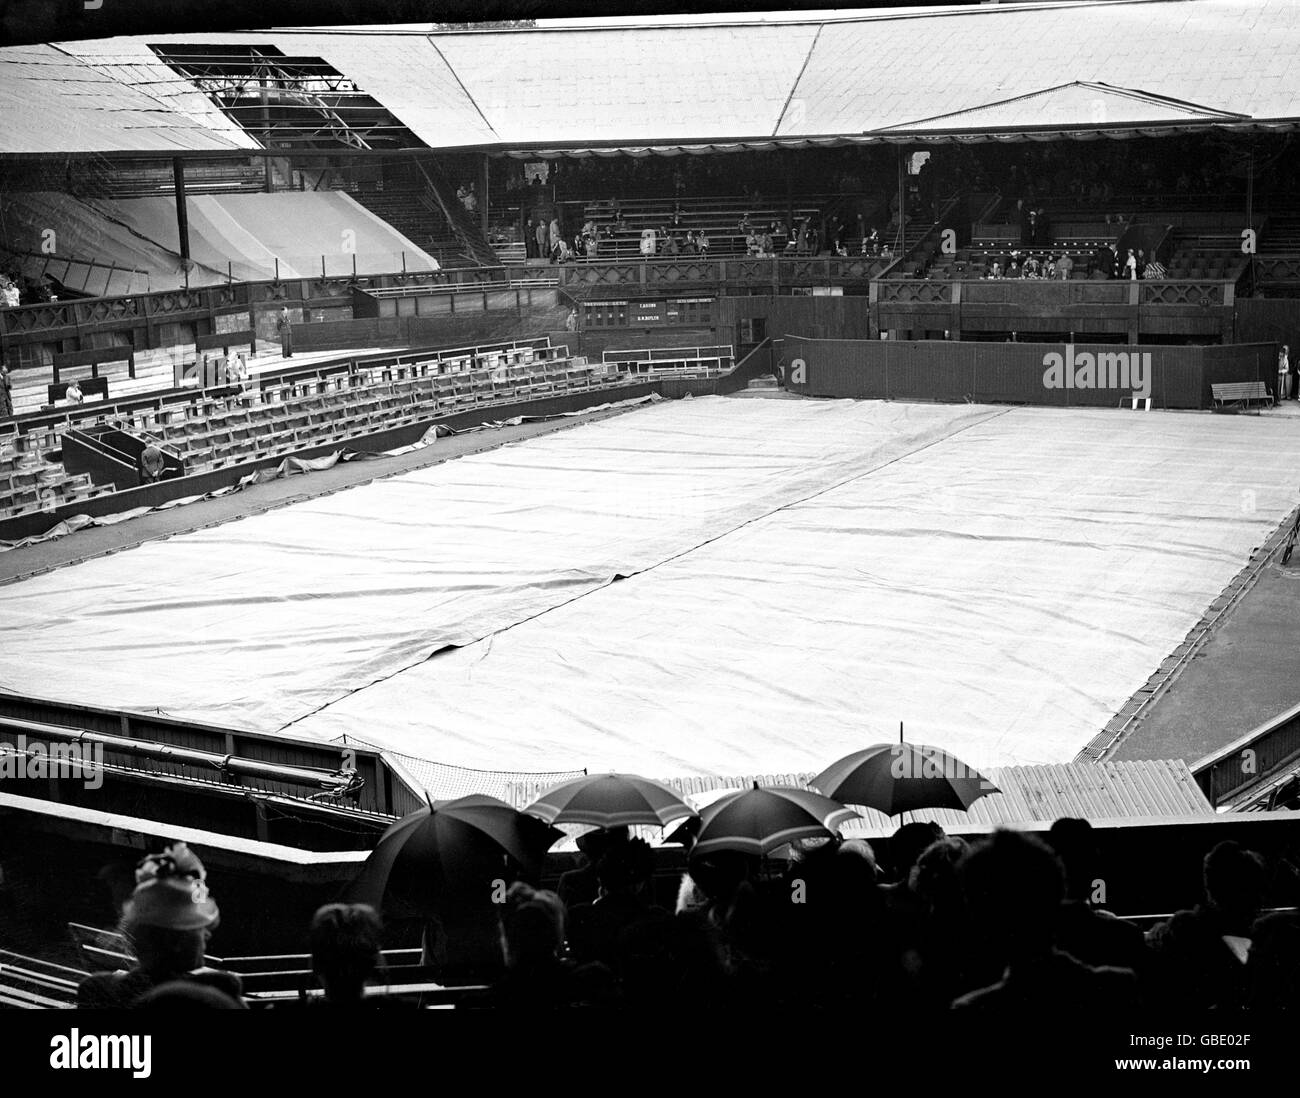 Tennis - Championnat de Wimbledon.Le terrain central est couvert de pluie sur le club de toute l'Angleterre (les dégâts causés par la bombe de la Seconde Guerre mondiale sont toujours clairement visibles dans le coin supérieur gauche) Banque D'Images